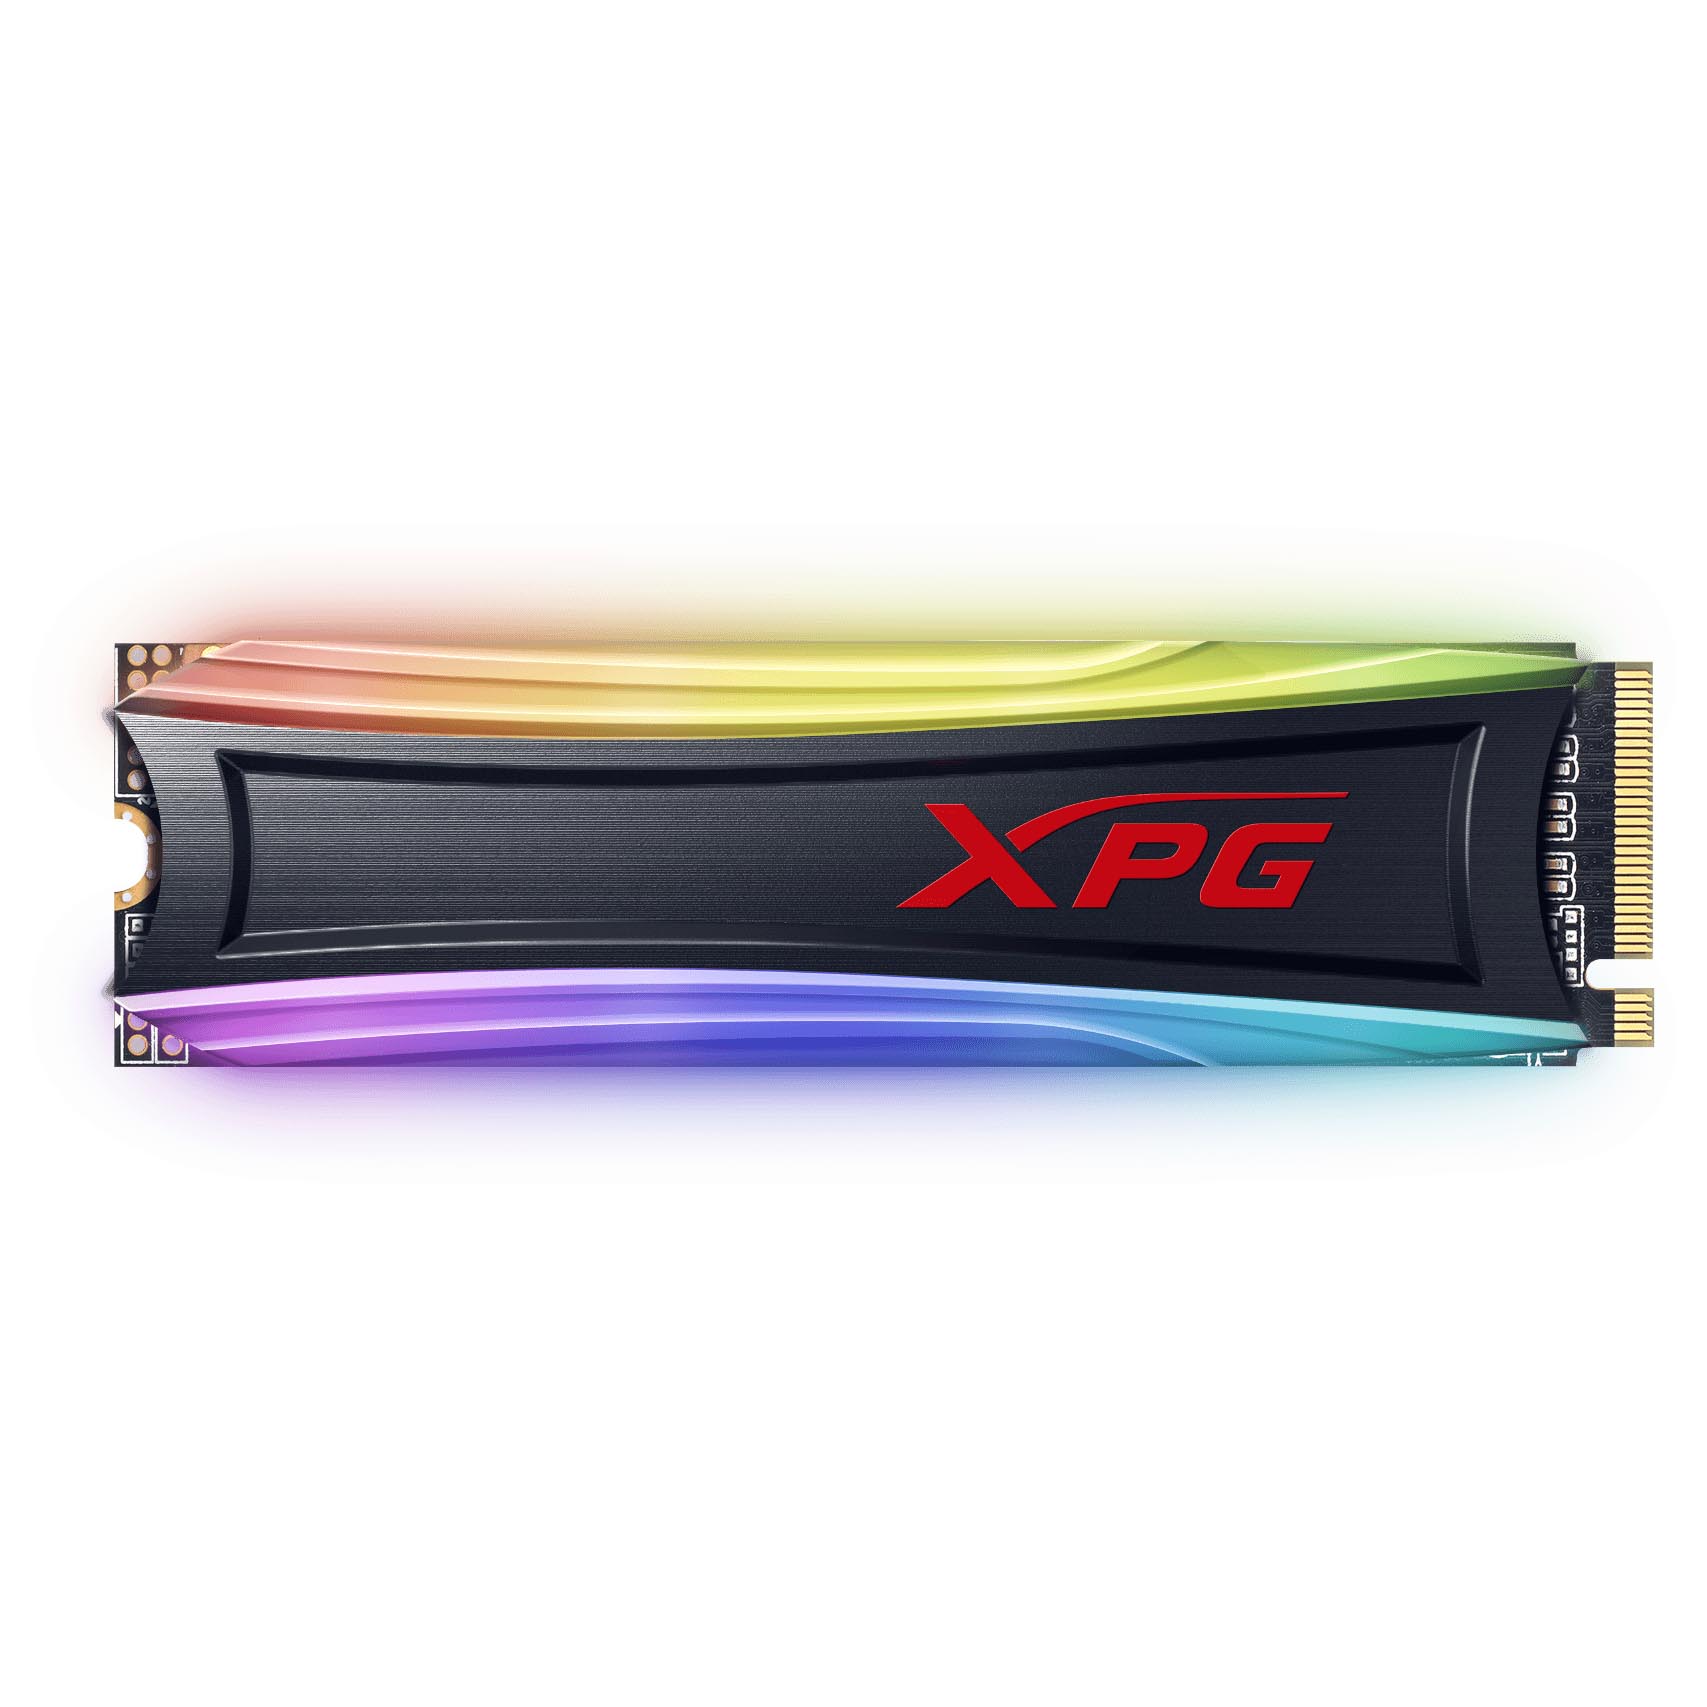 Внутренний твердотельный накопитель Adata XPG Spectrix S40G RGB, AS40G-512GT-C, 512Гб, М.2 2280 твердотельный накопитель a data xpg spectrix s40g rgb 1tb as40g 1tt c